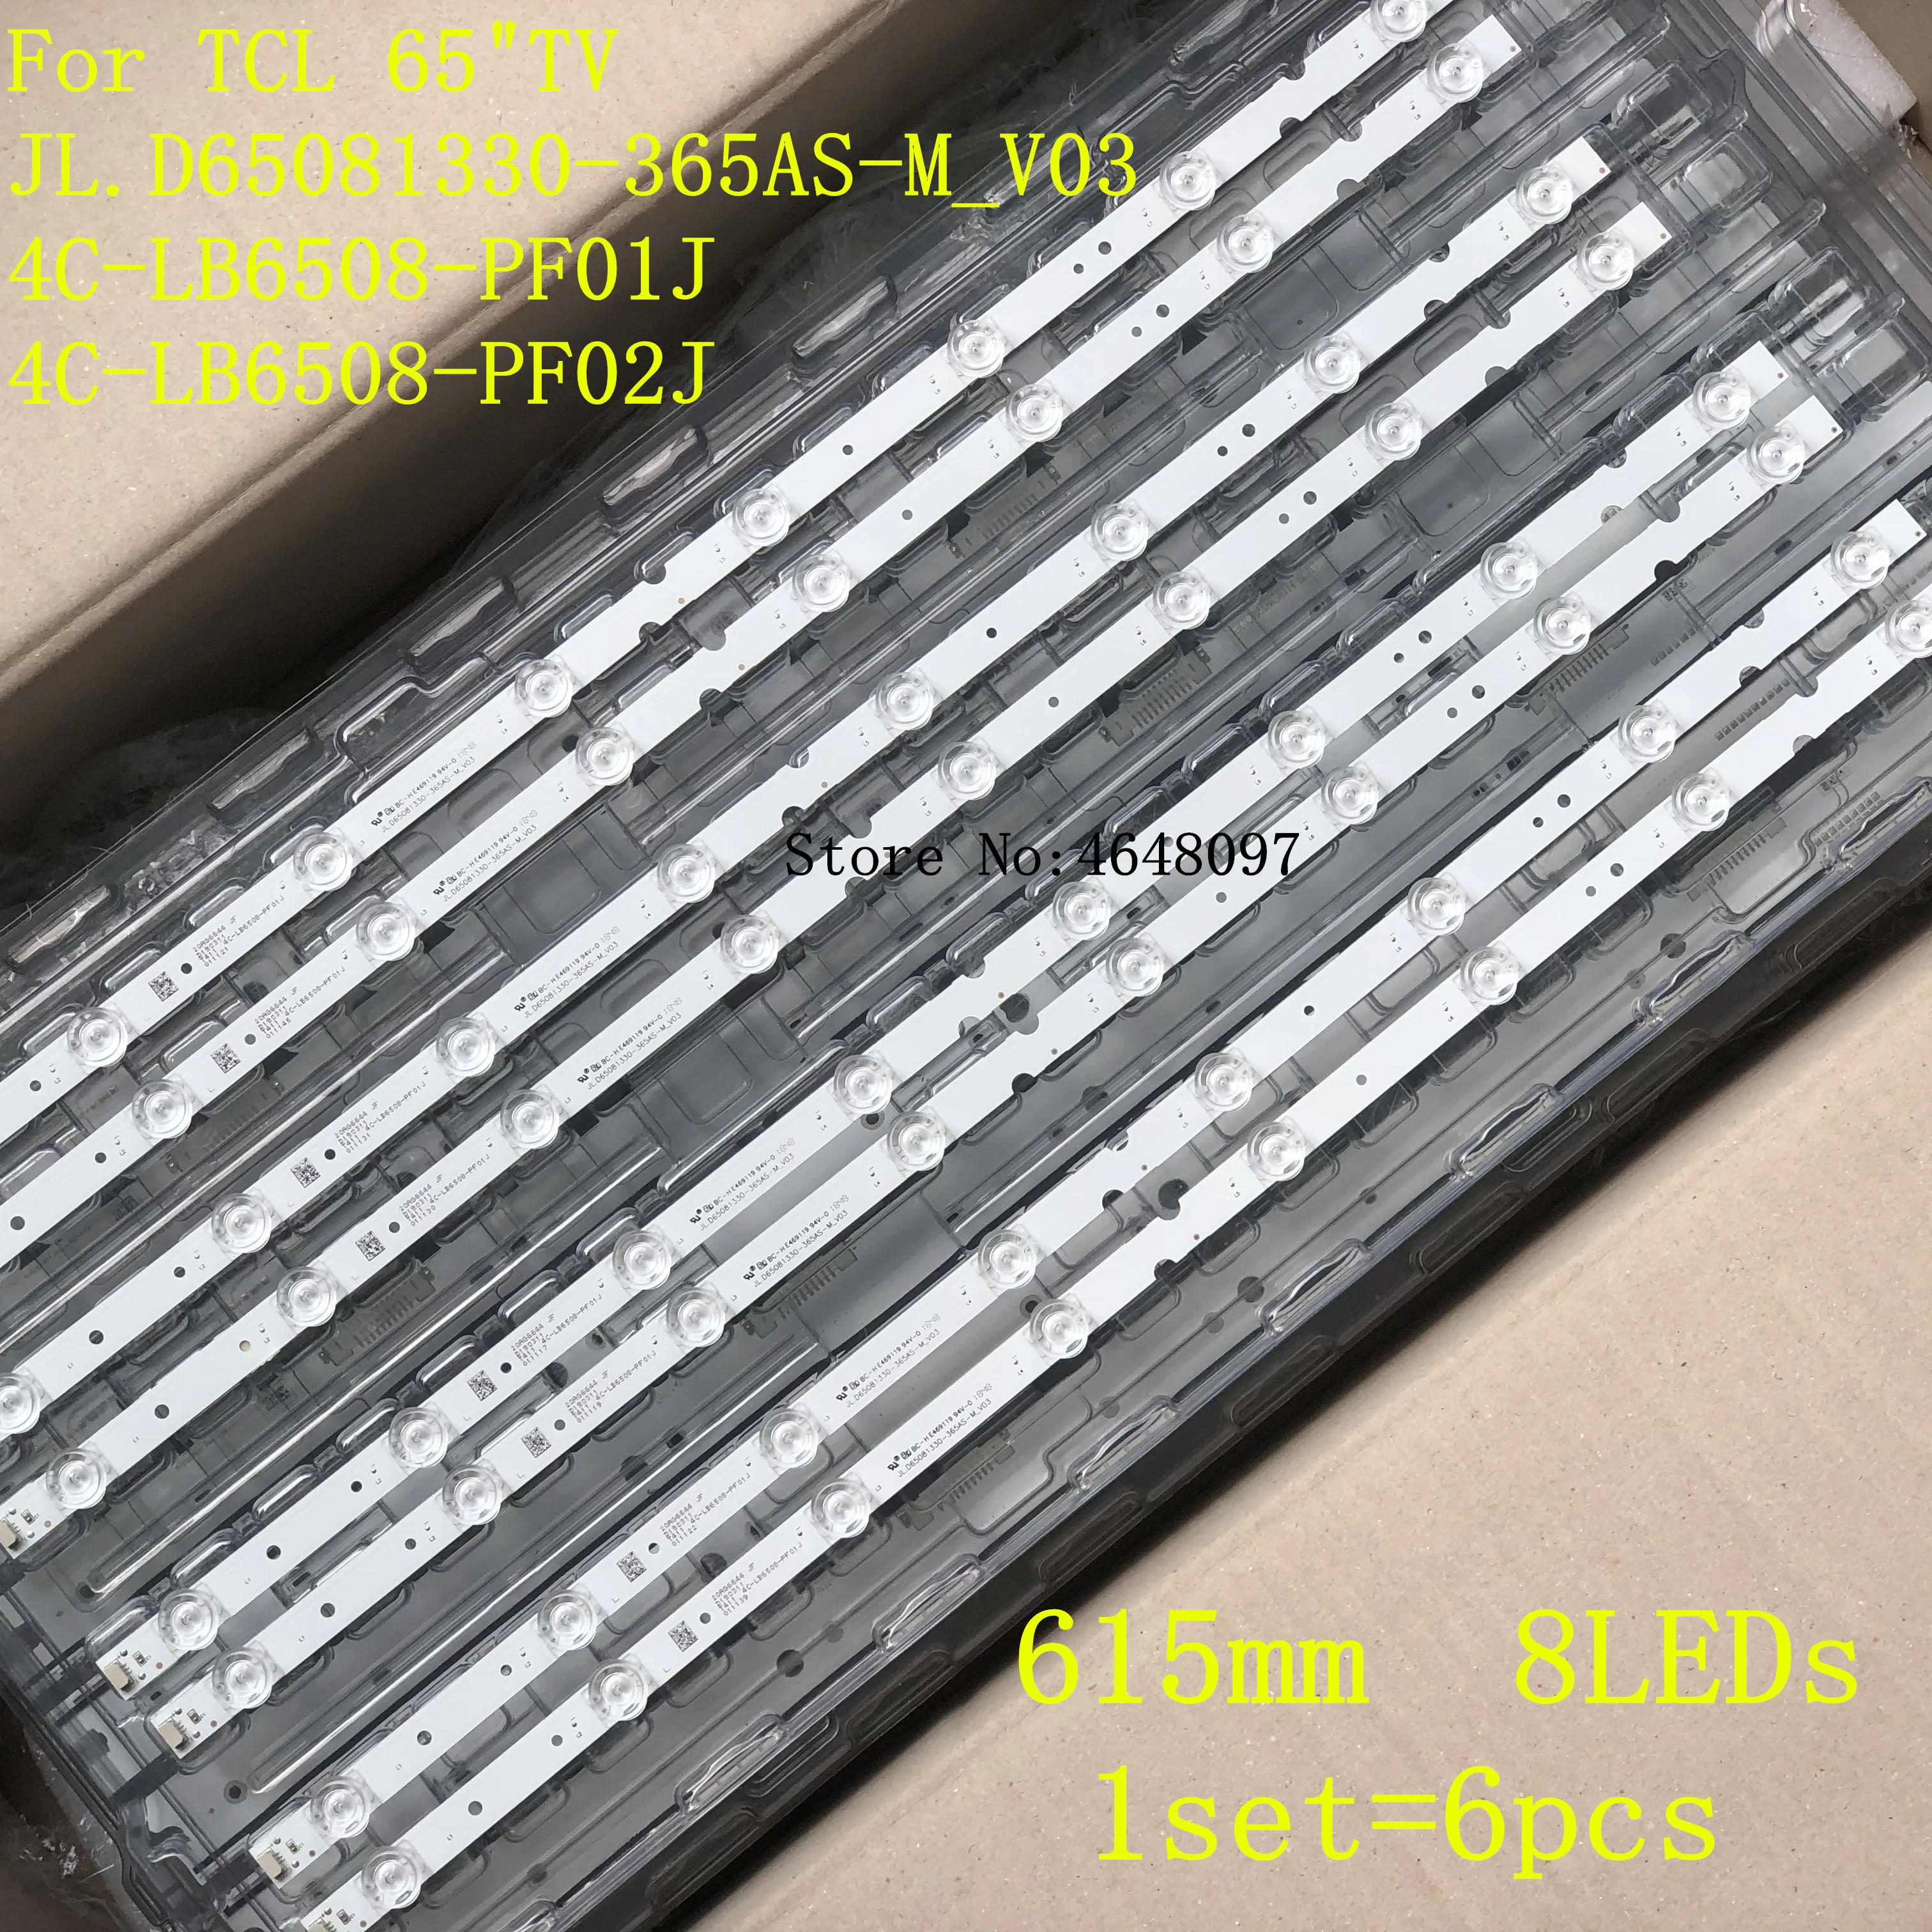 

New LED strips for TCL 65 TV 65S421 65S421LCAA 65S425 65S425TACA 65S4LEAA JL.D65081330-365AS-M_V03 4C-LB6508-PF02J